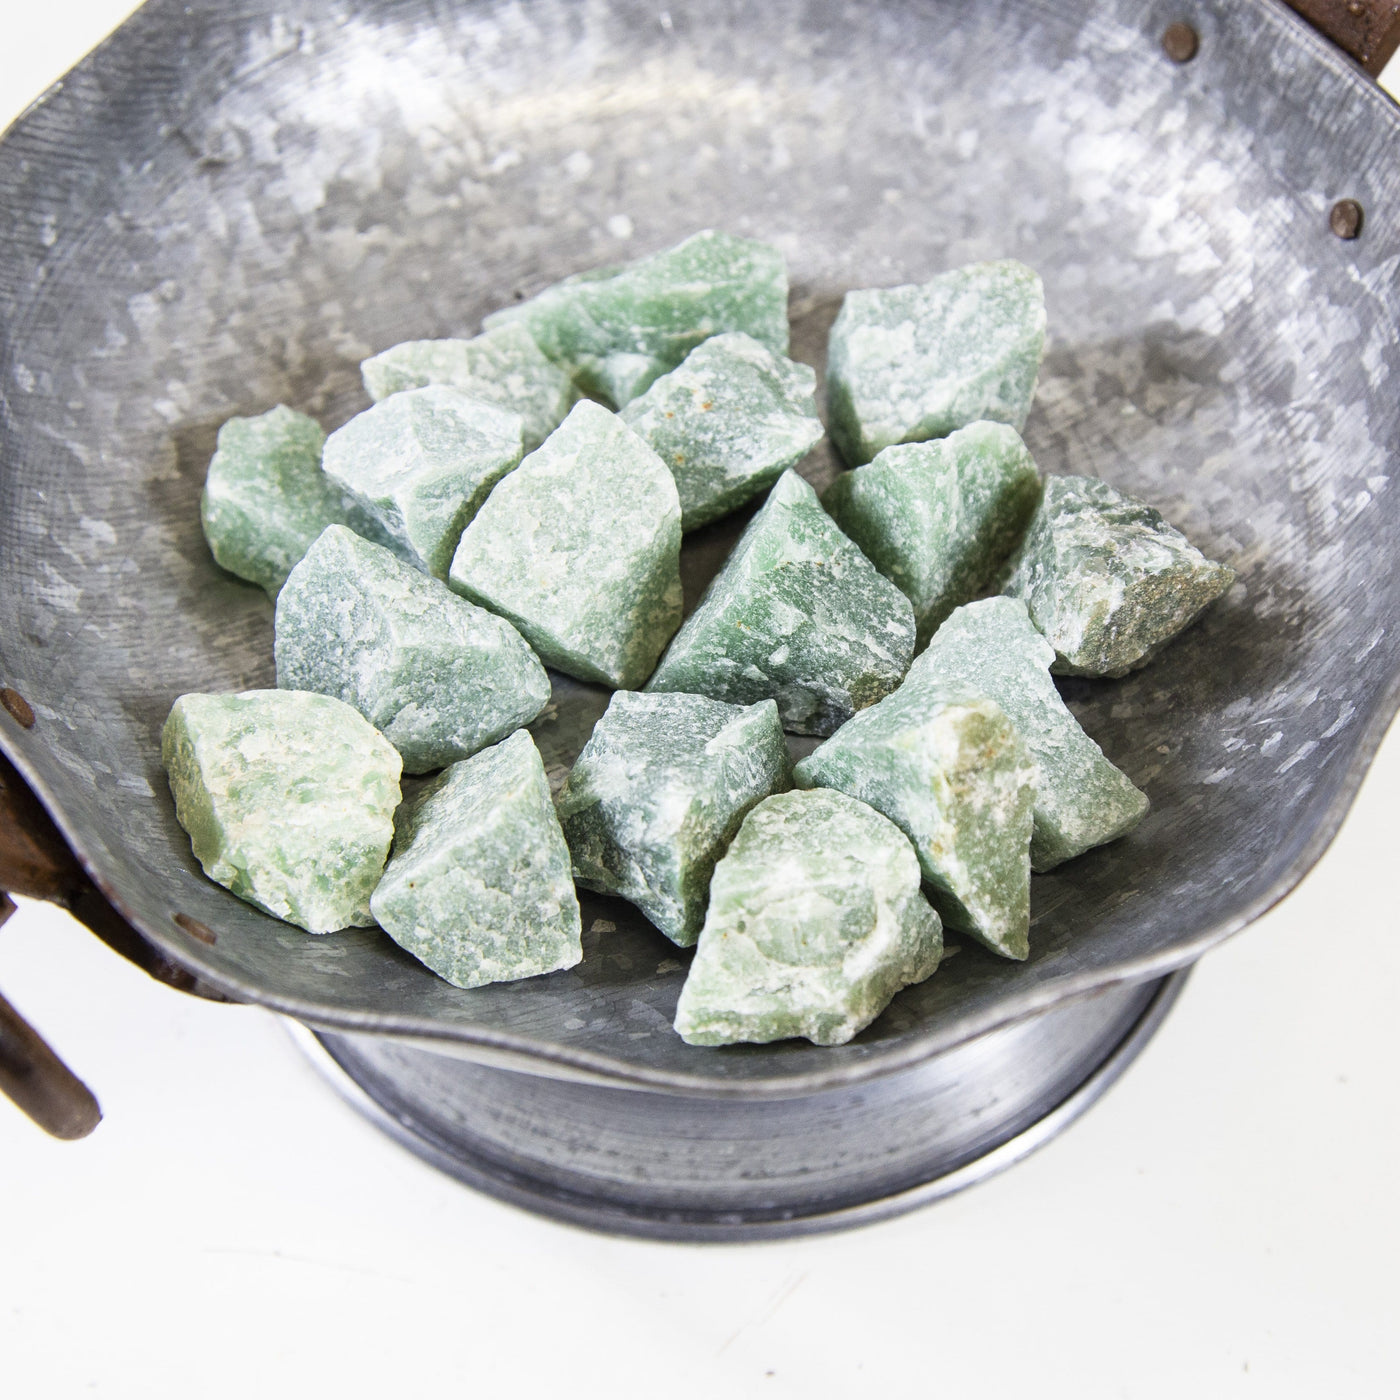 green quartz rough stones in a bowl